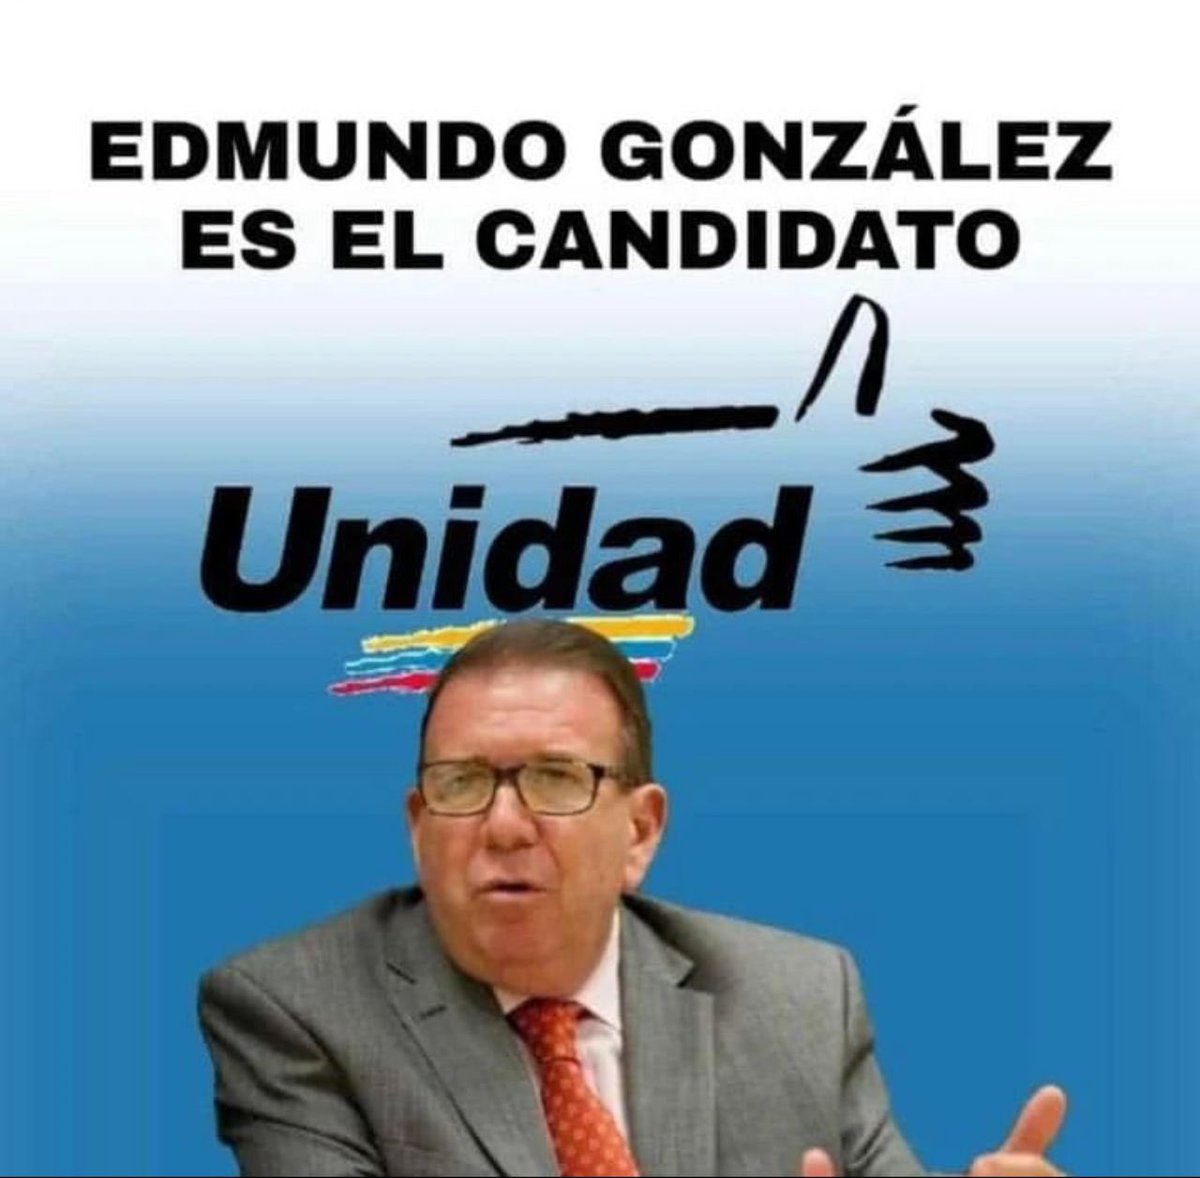 Anunciamos a todos los venezolanos que de manera unánime aprobamos la candidatura del Embajador Edmundo González Urrutia @EdmundoGU, quién ya está inscrito como candidato presidencial de la unidad democrática en la tarjeta de la #MUD. El pueblo venezolano, quiere un cambio a